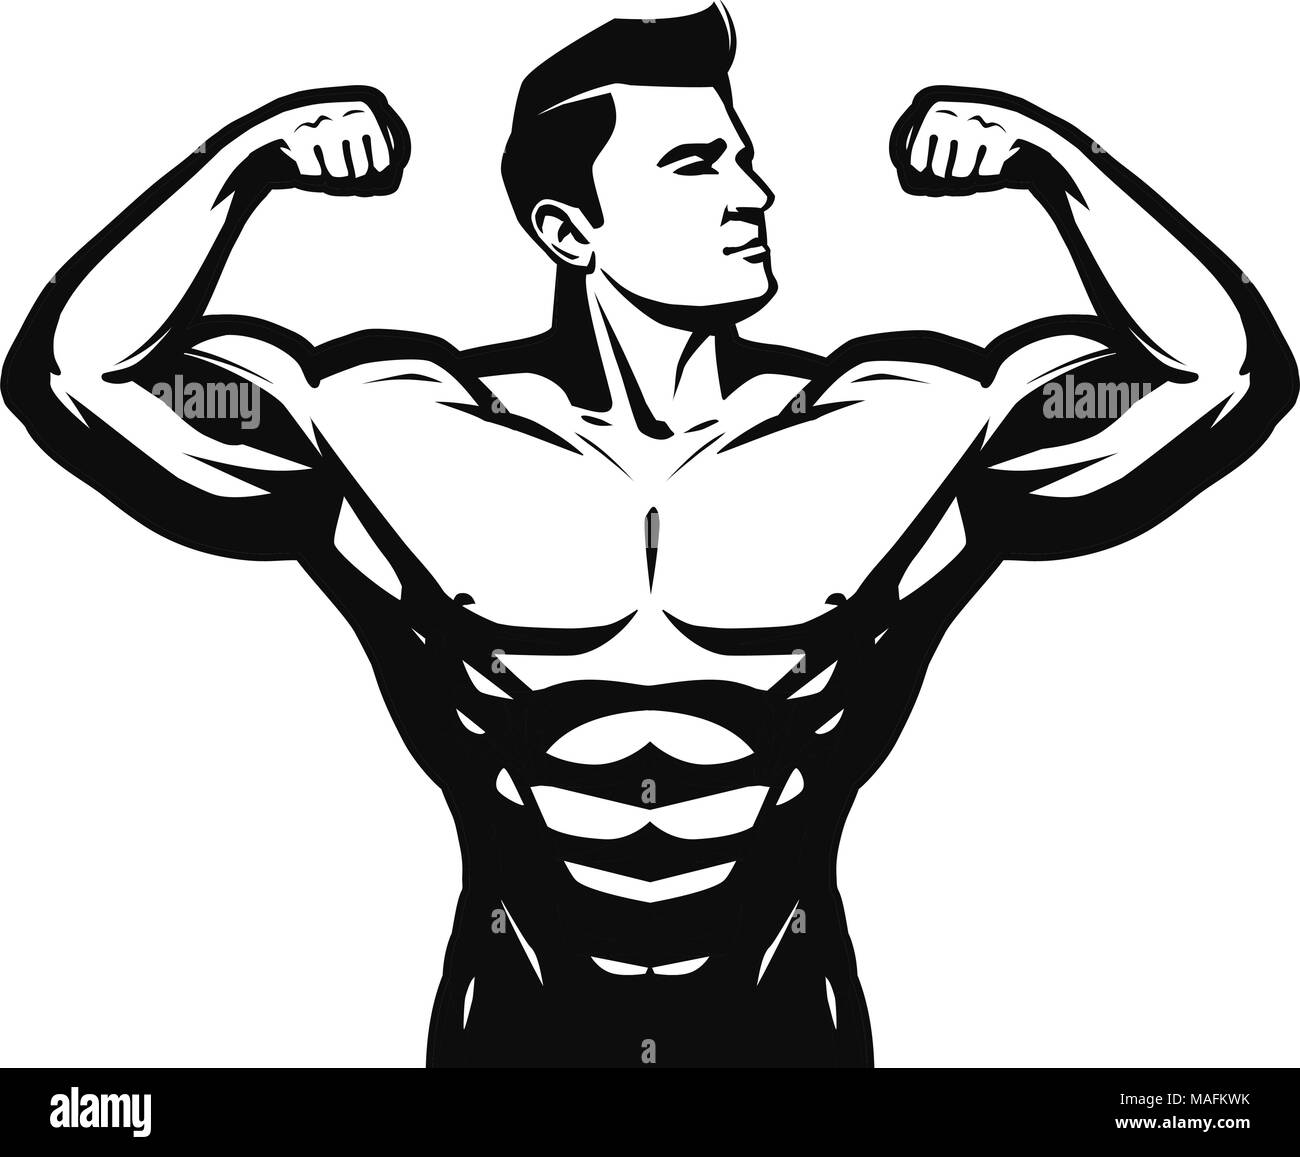 Palestra, sport, bodybuilding logo o etichetta. Uomo Forte con grandi muscoli. Illustrazione Vettoriale Illustrazione Vettoriale